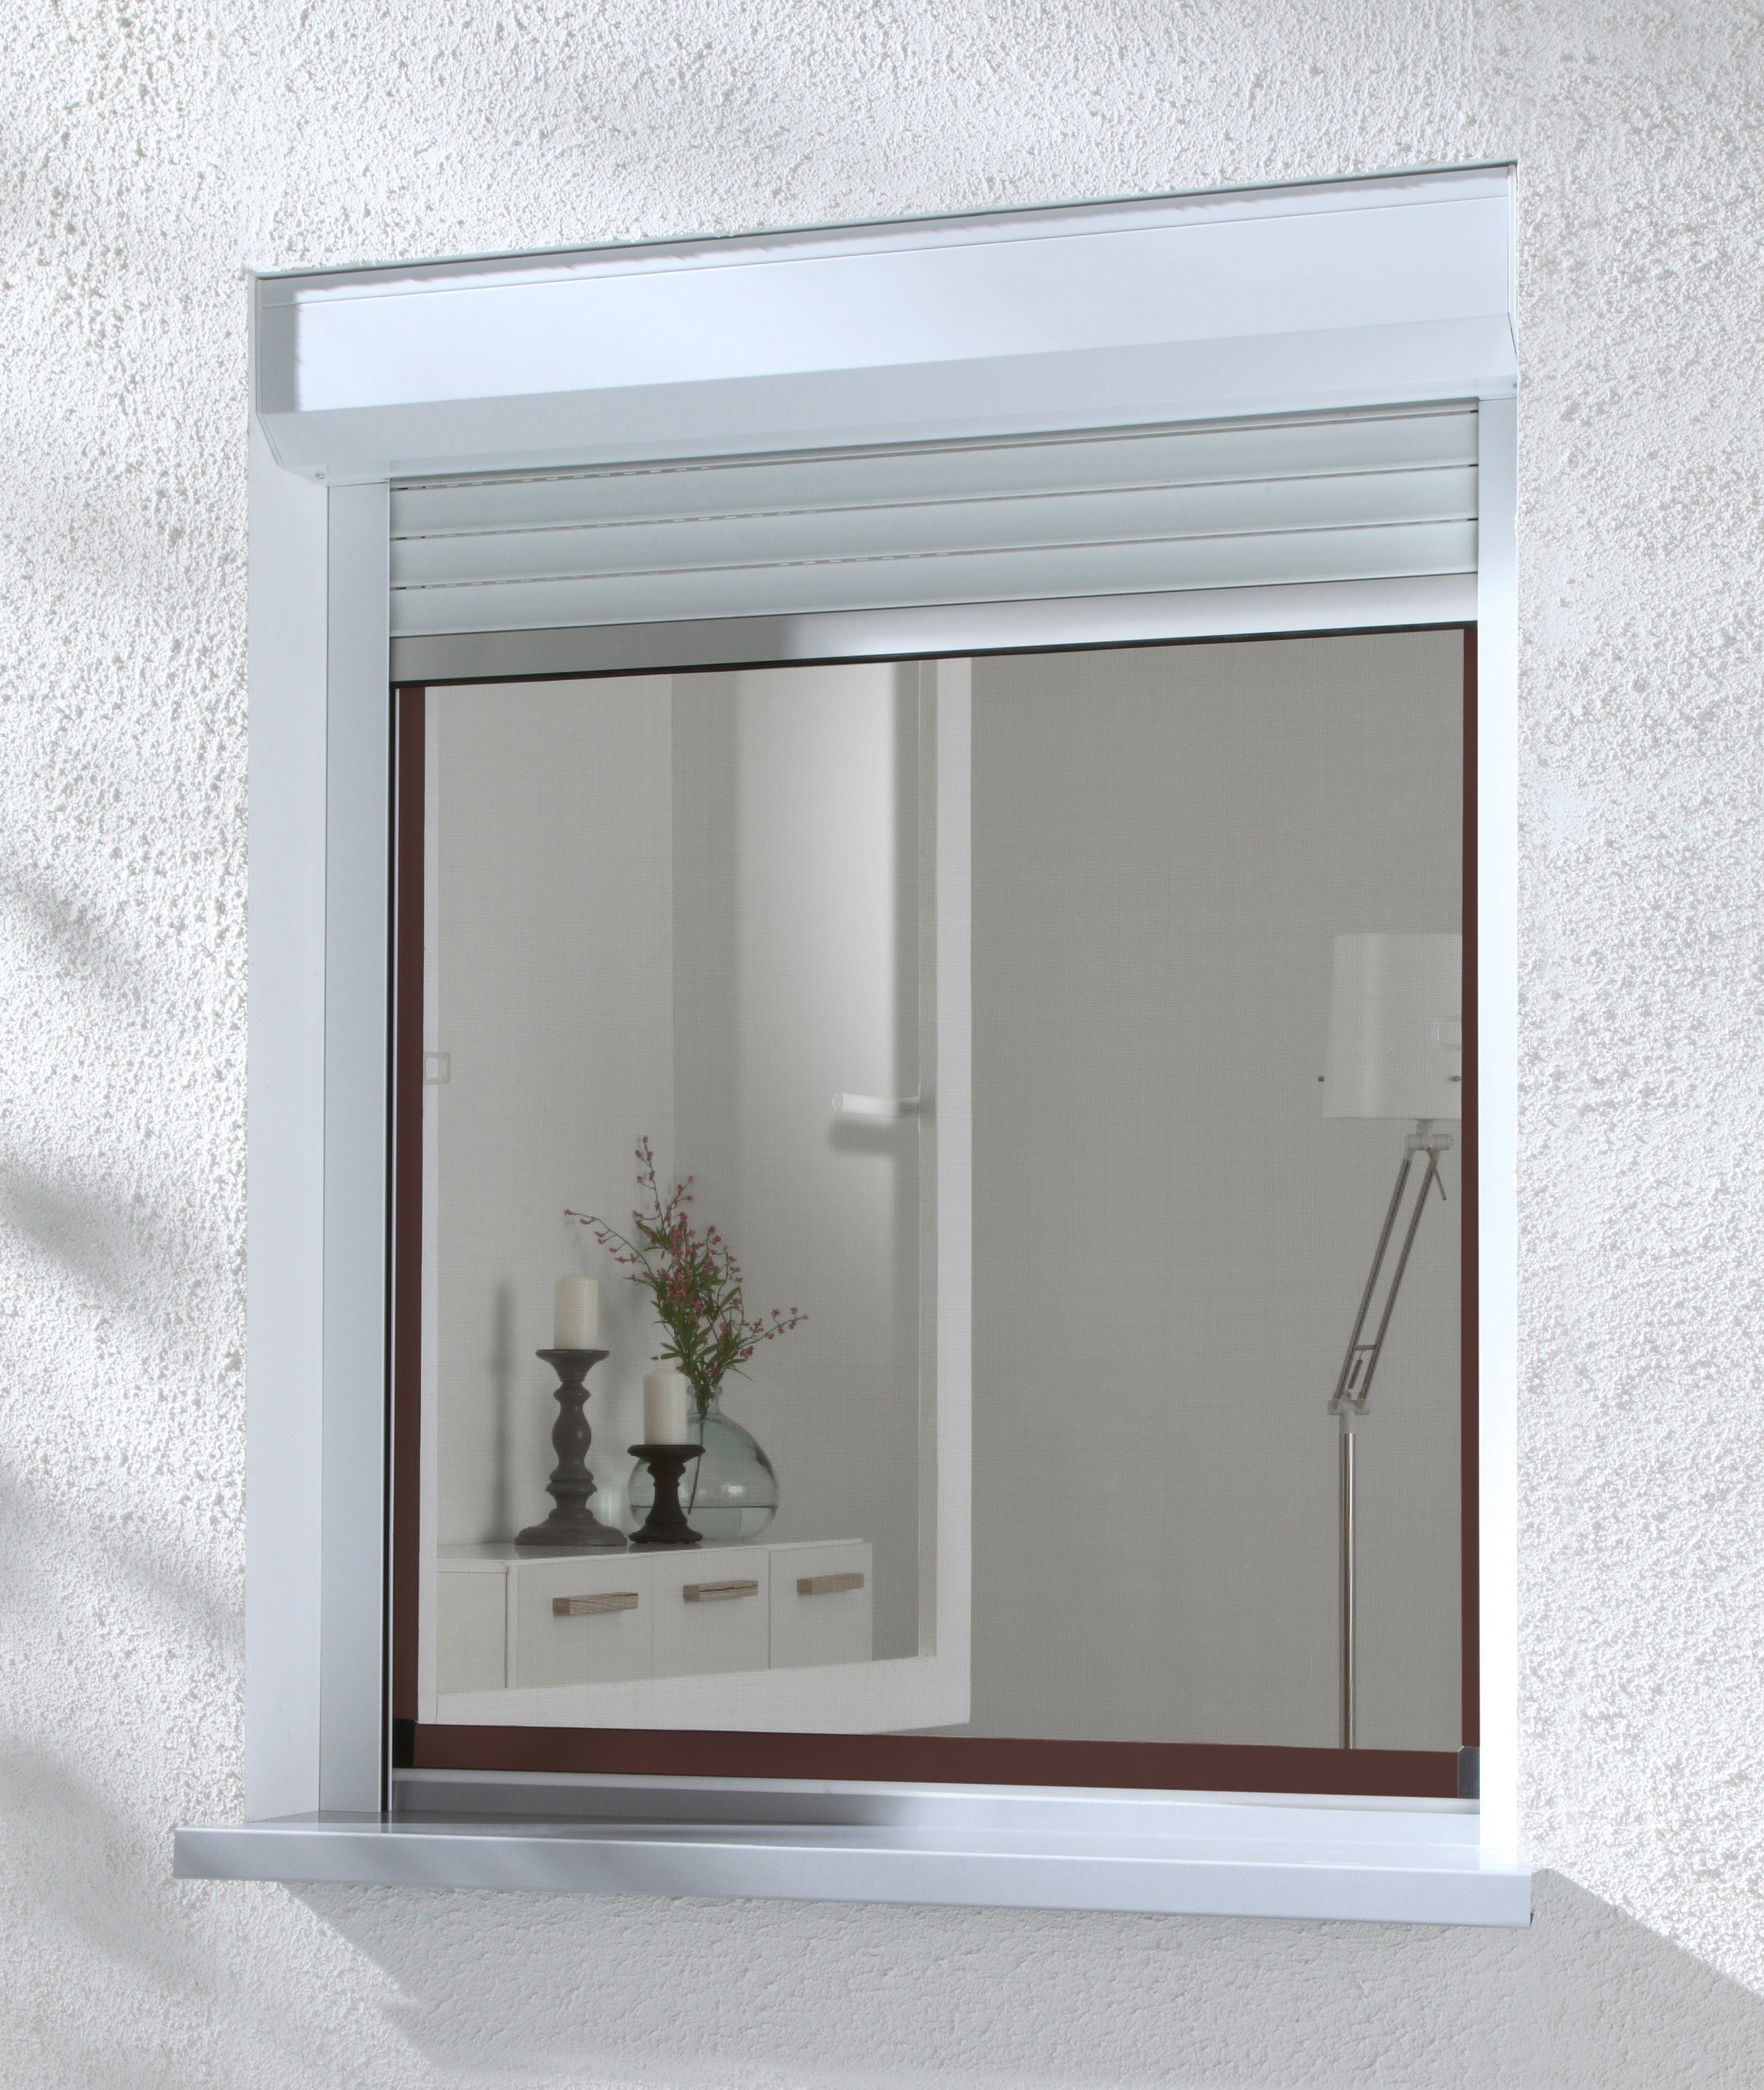 Insektenschutz-Fensterrahmen COMPACT, international hecht braun/anthrazit, BxH: cm 130x150